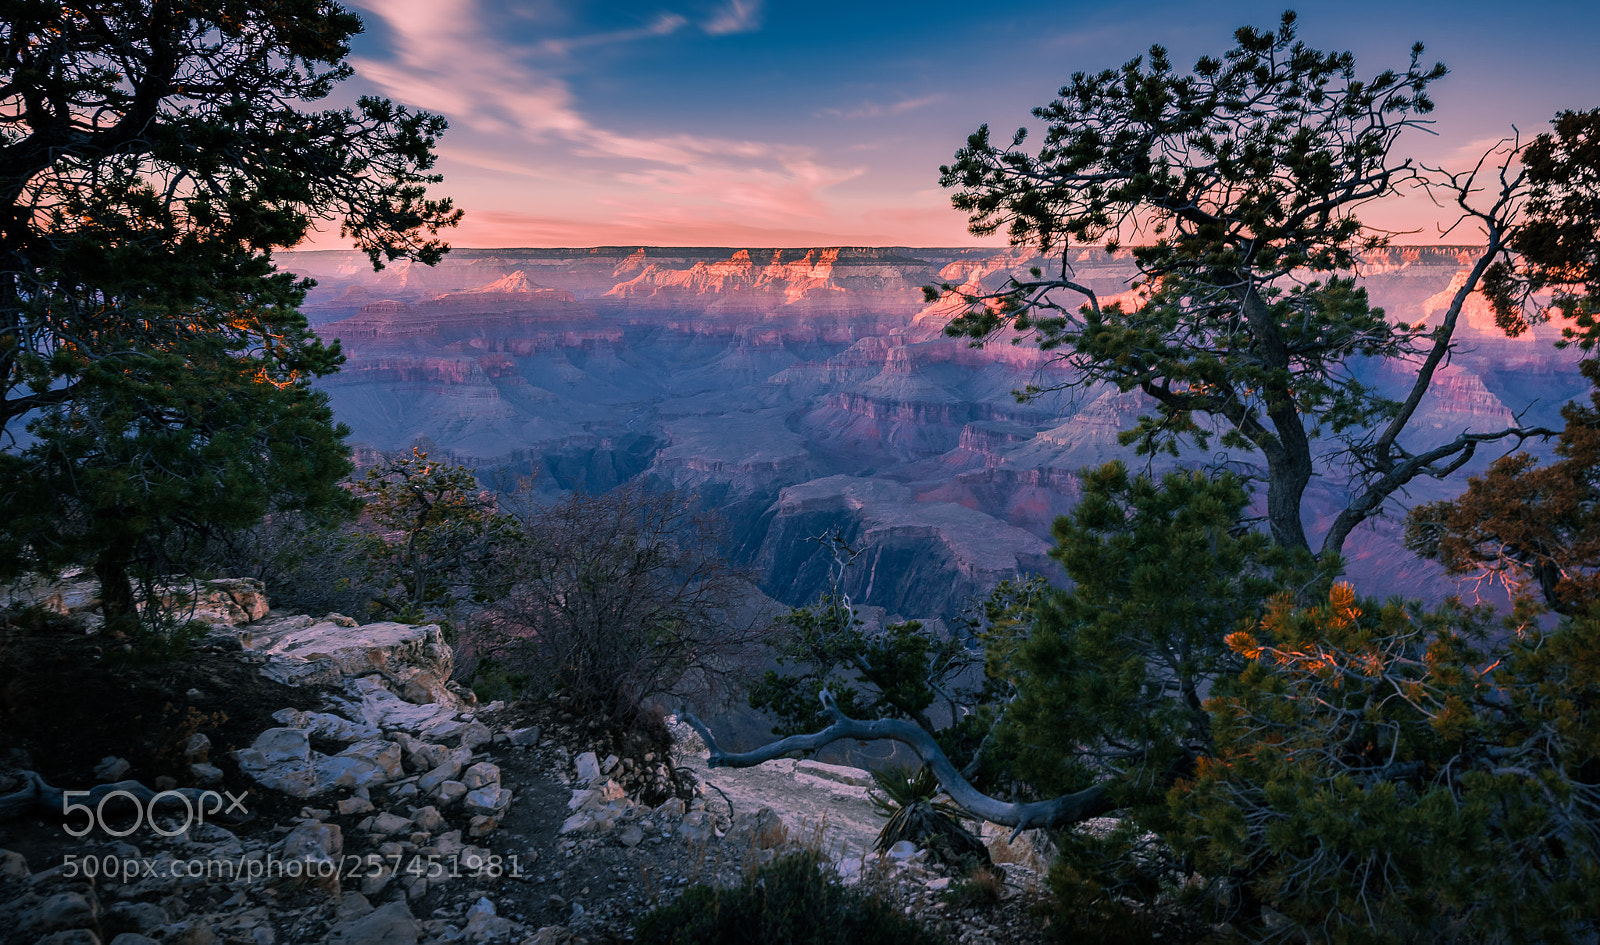 Nikon D810 sample photo. Grand canyon at dusk photography